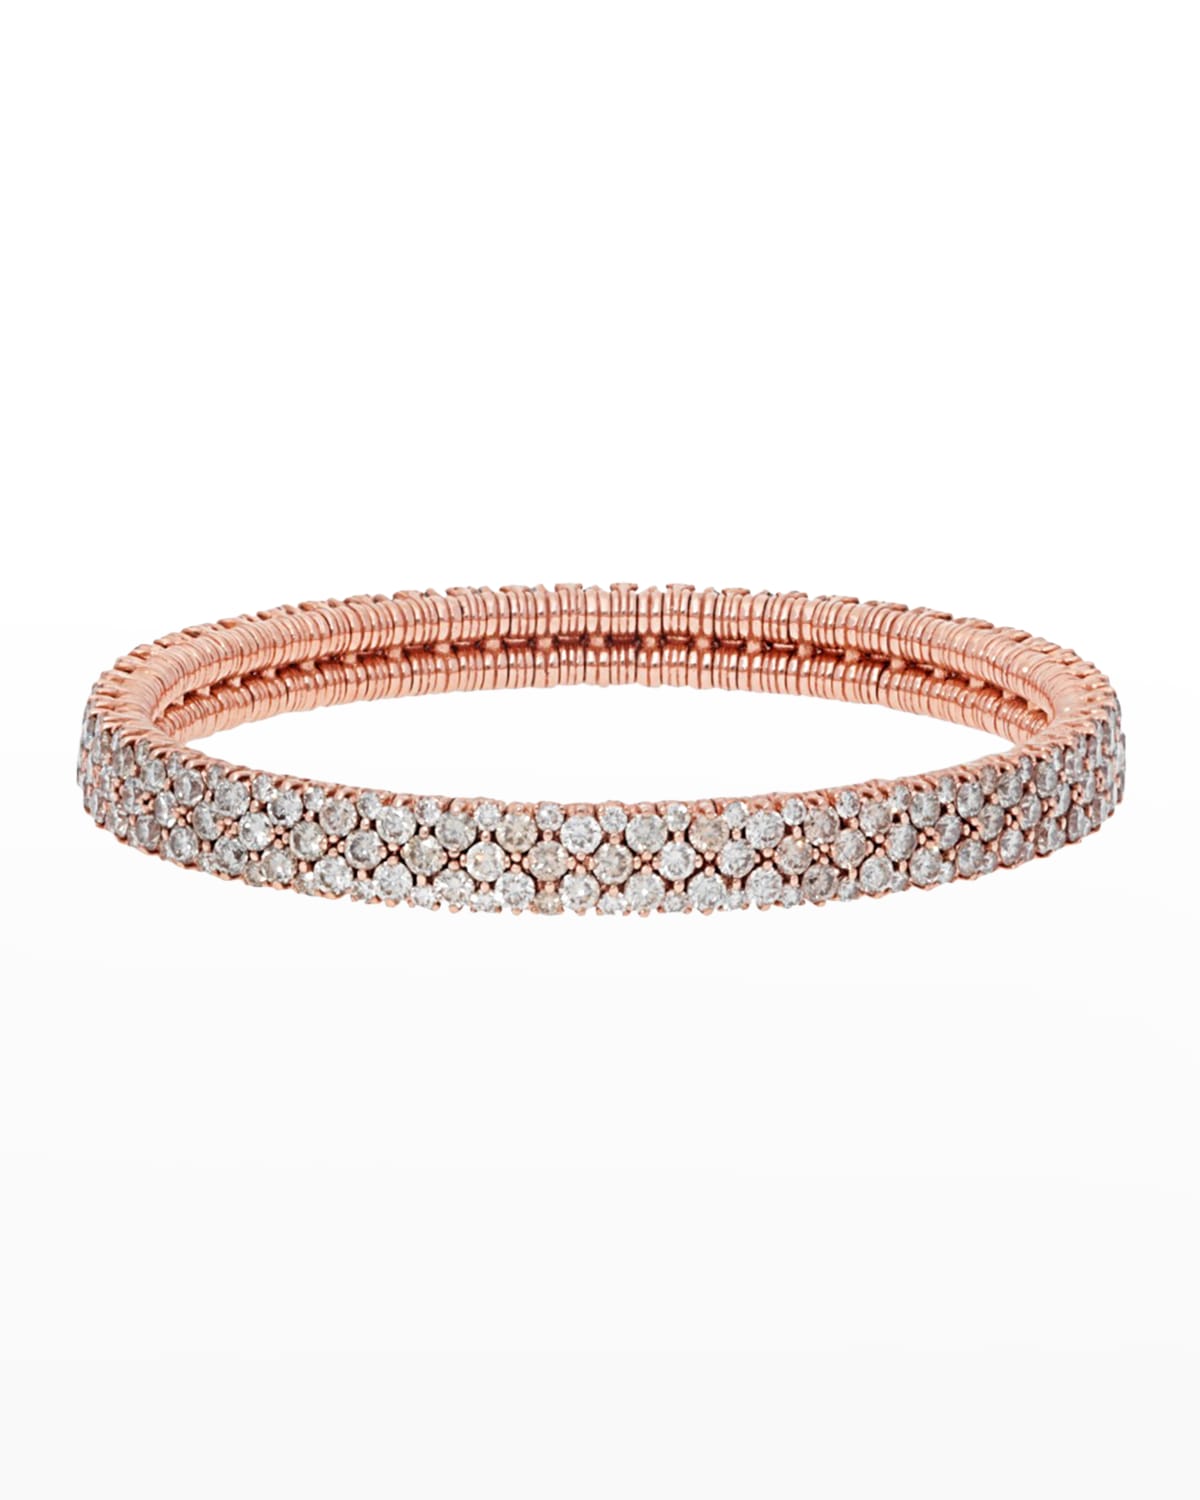 CASHMERE 18k Rose Gold Diamond Stretch Bracelet